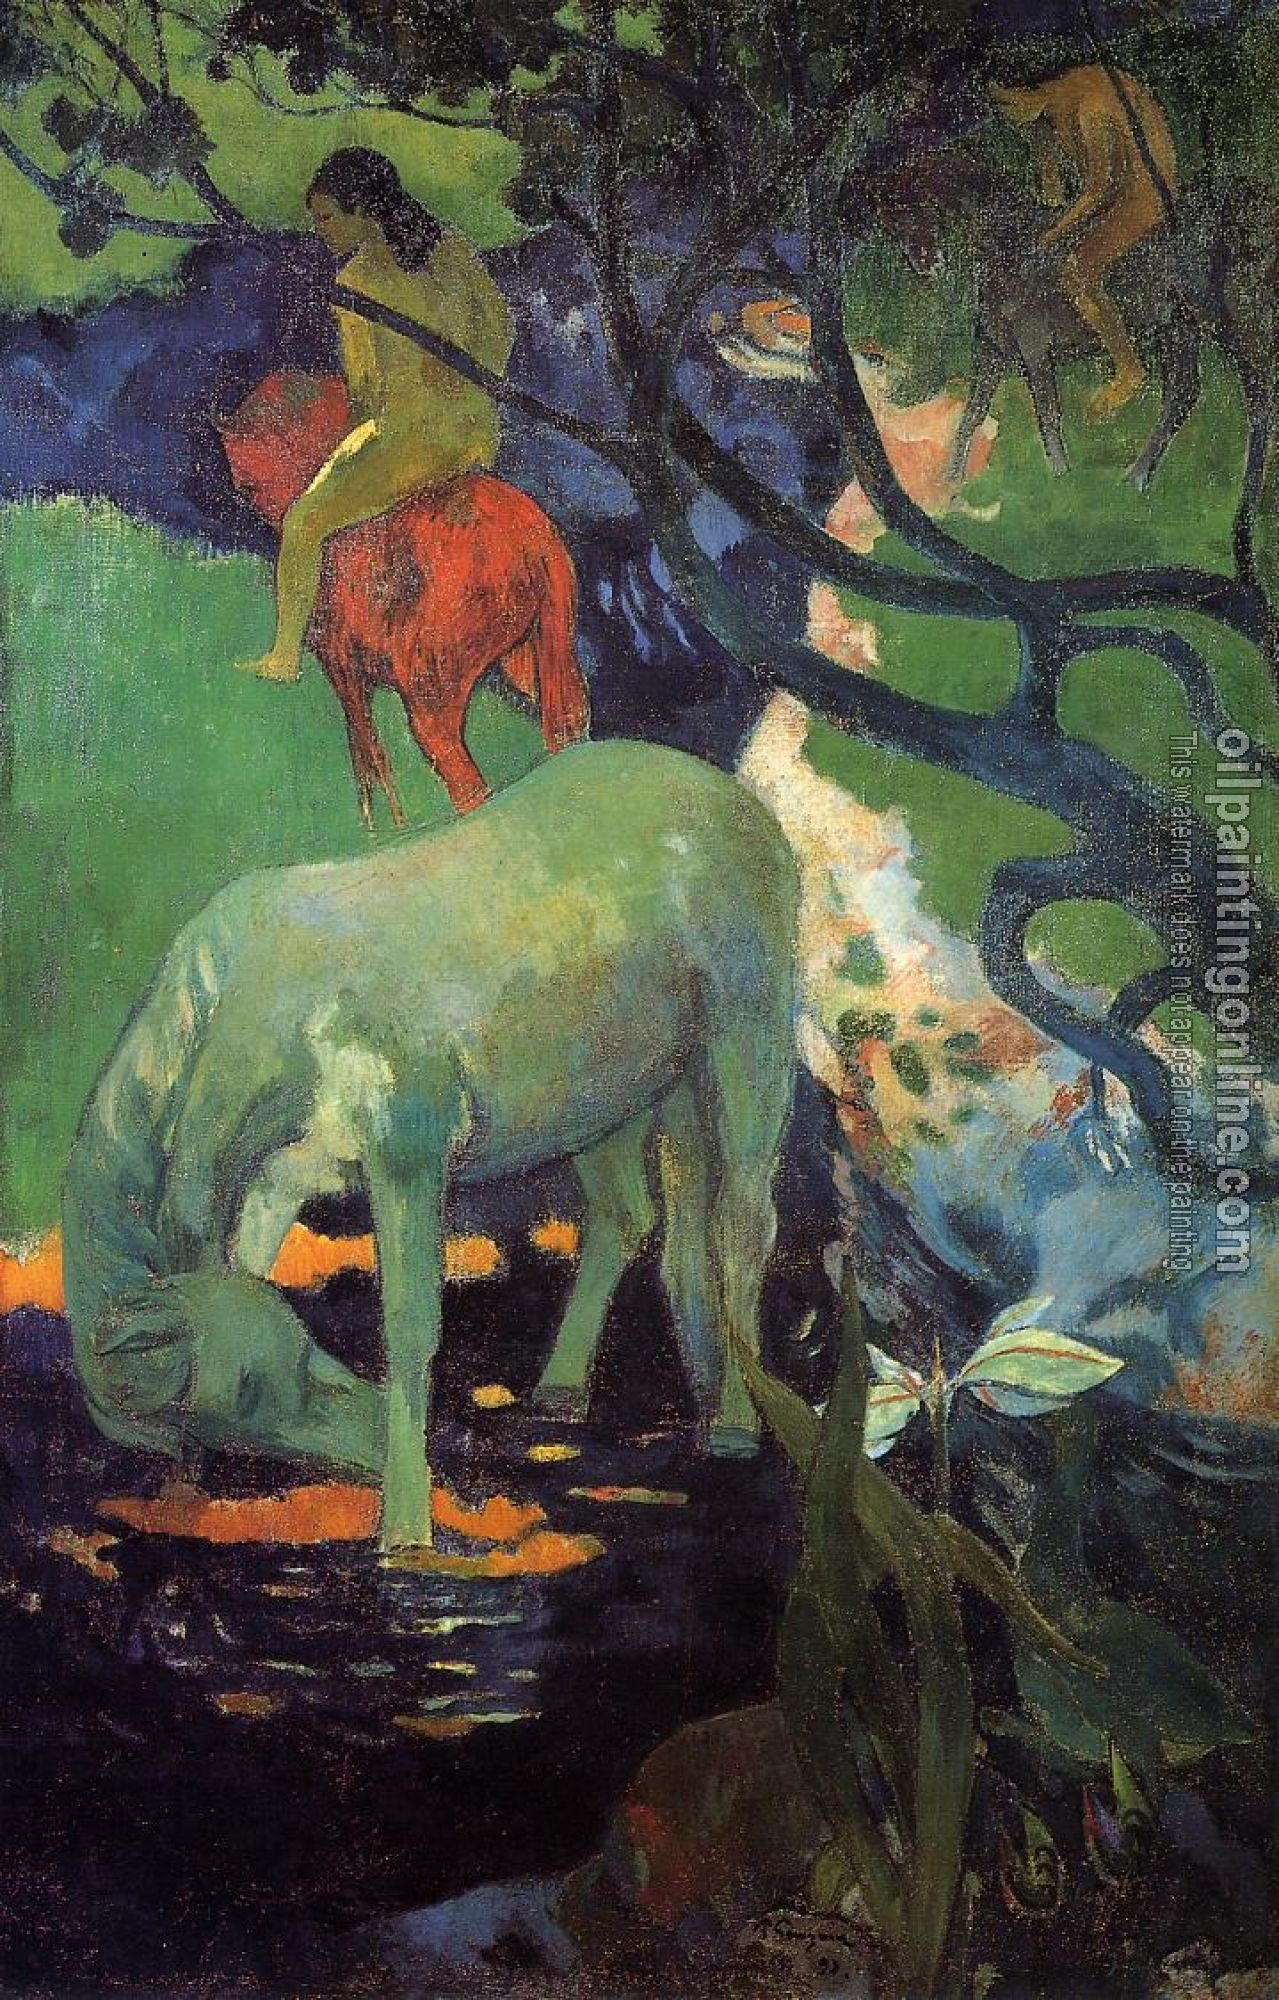 Gauguin, Paul - The White Horse